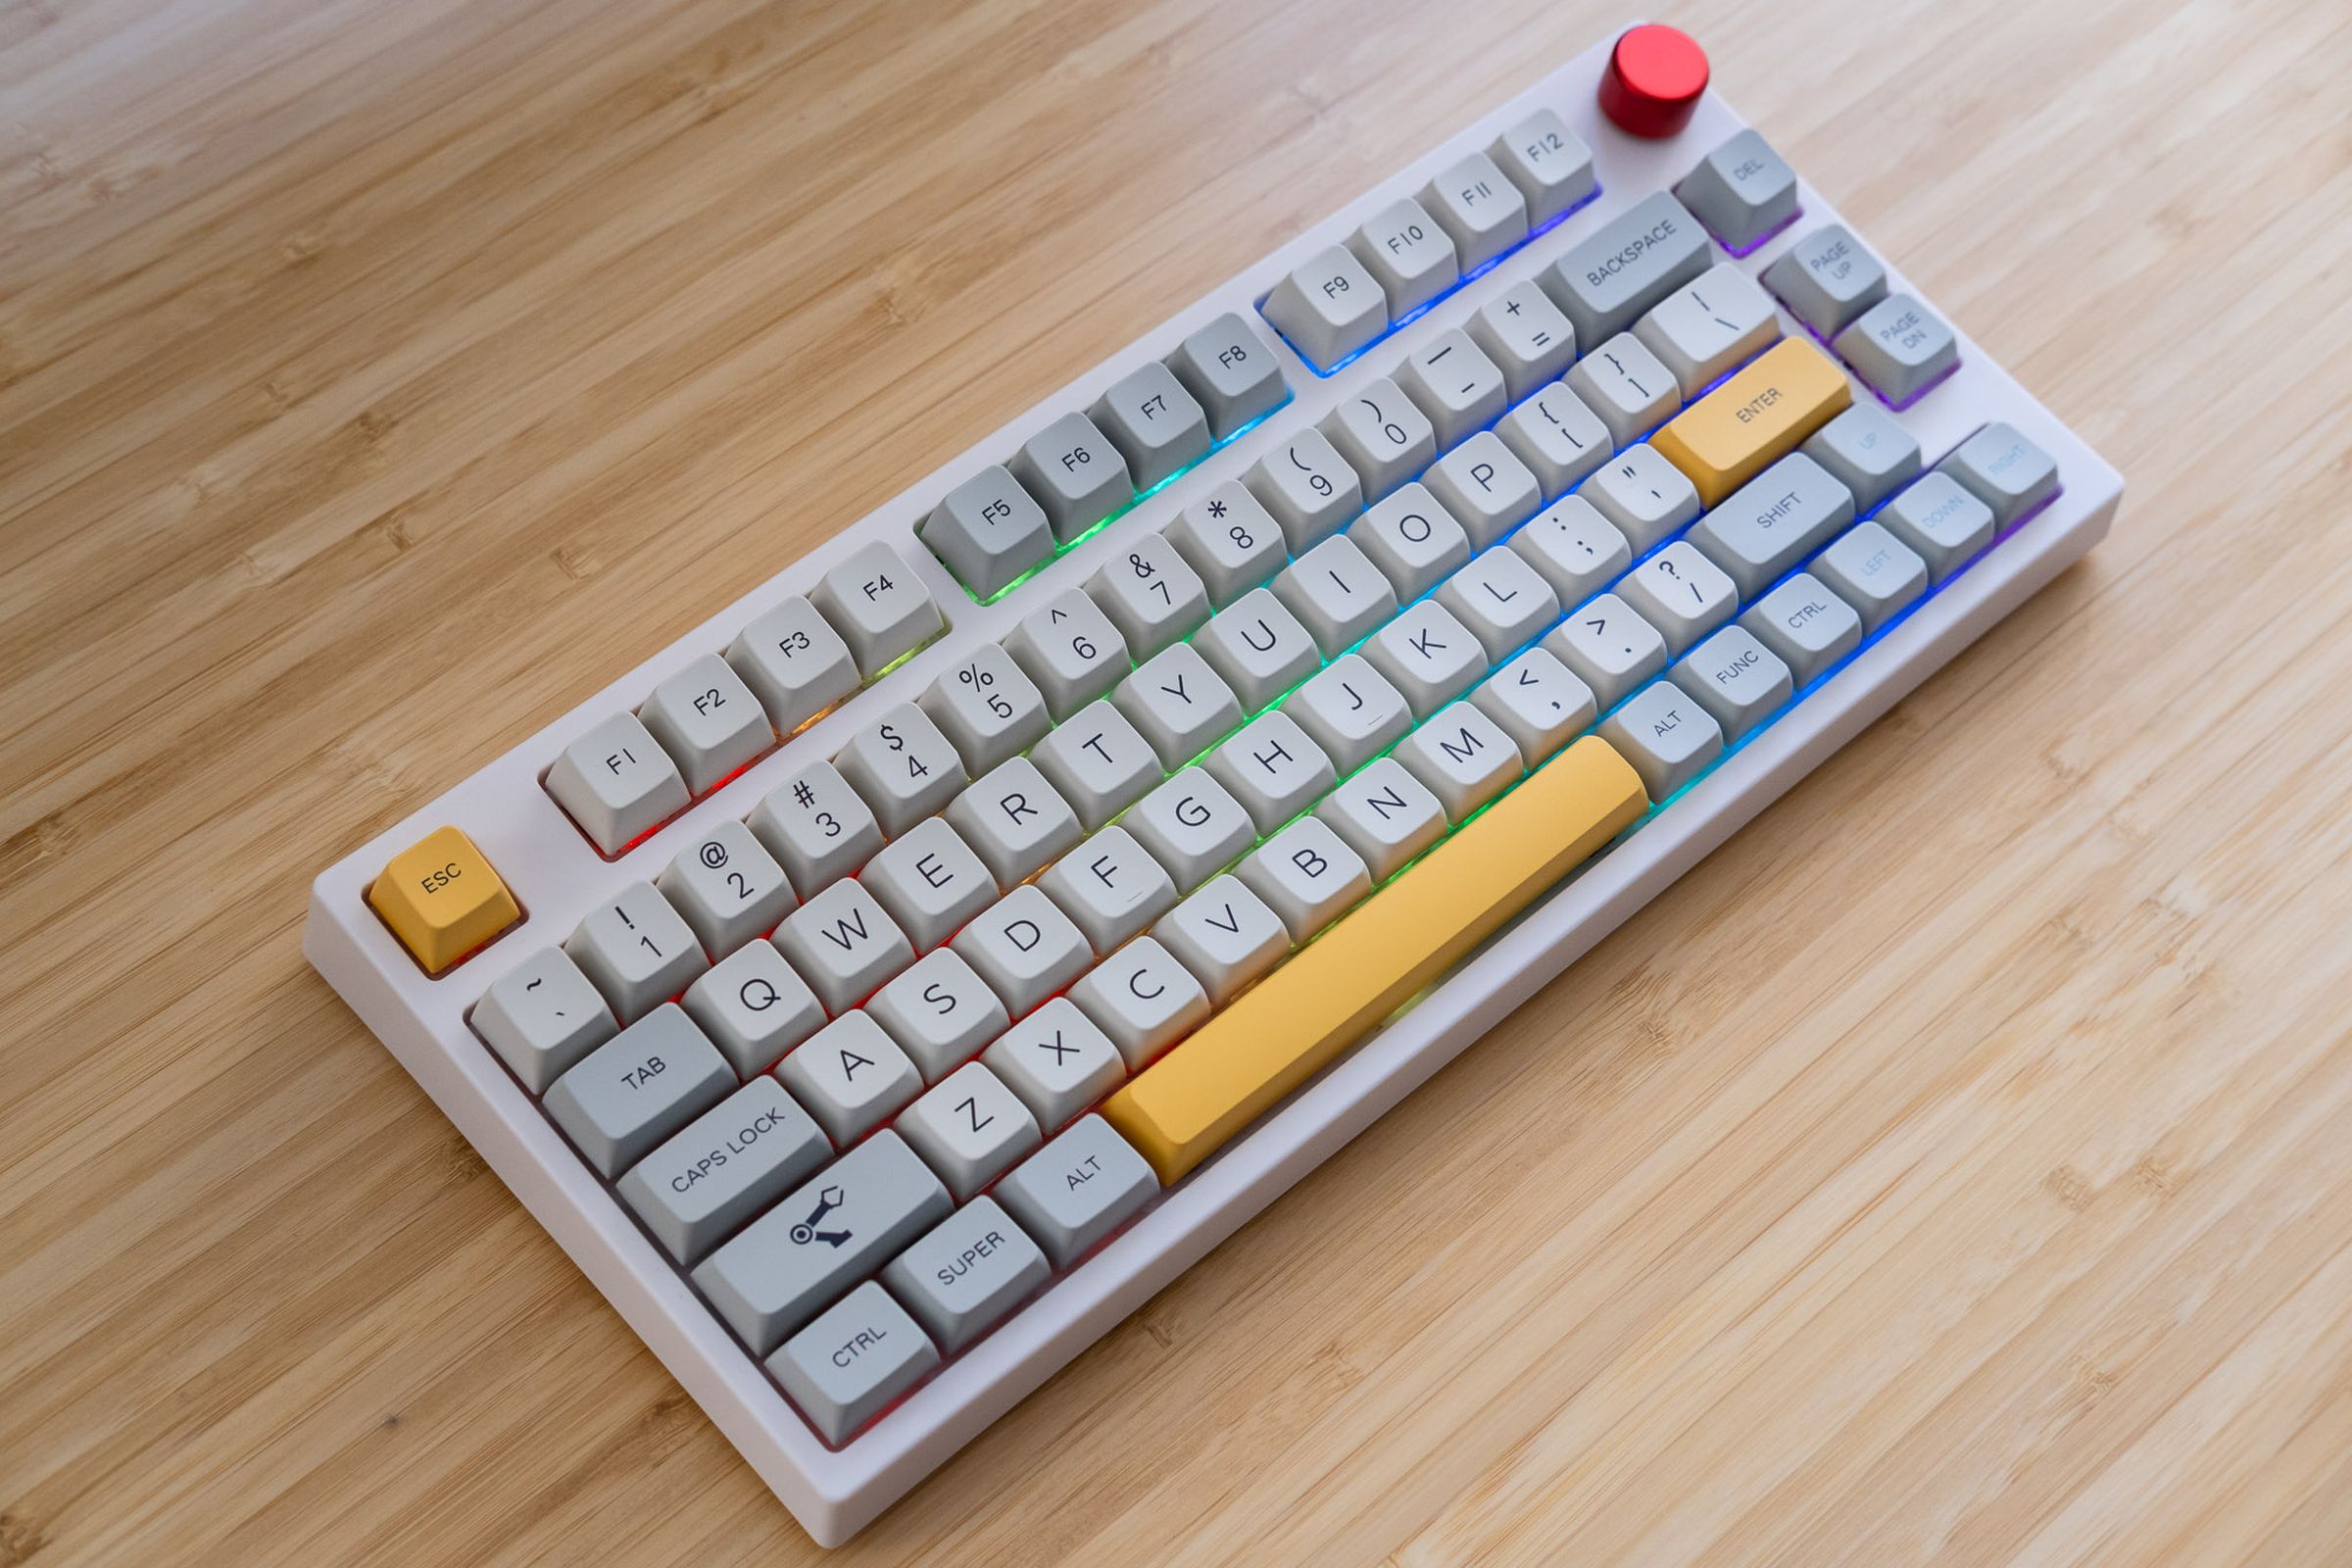 Epomaker TH80 keyboard on a desk.